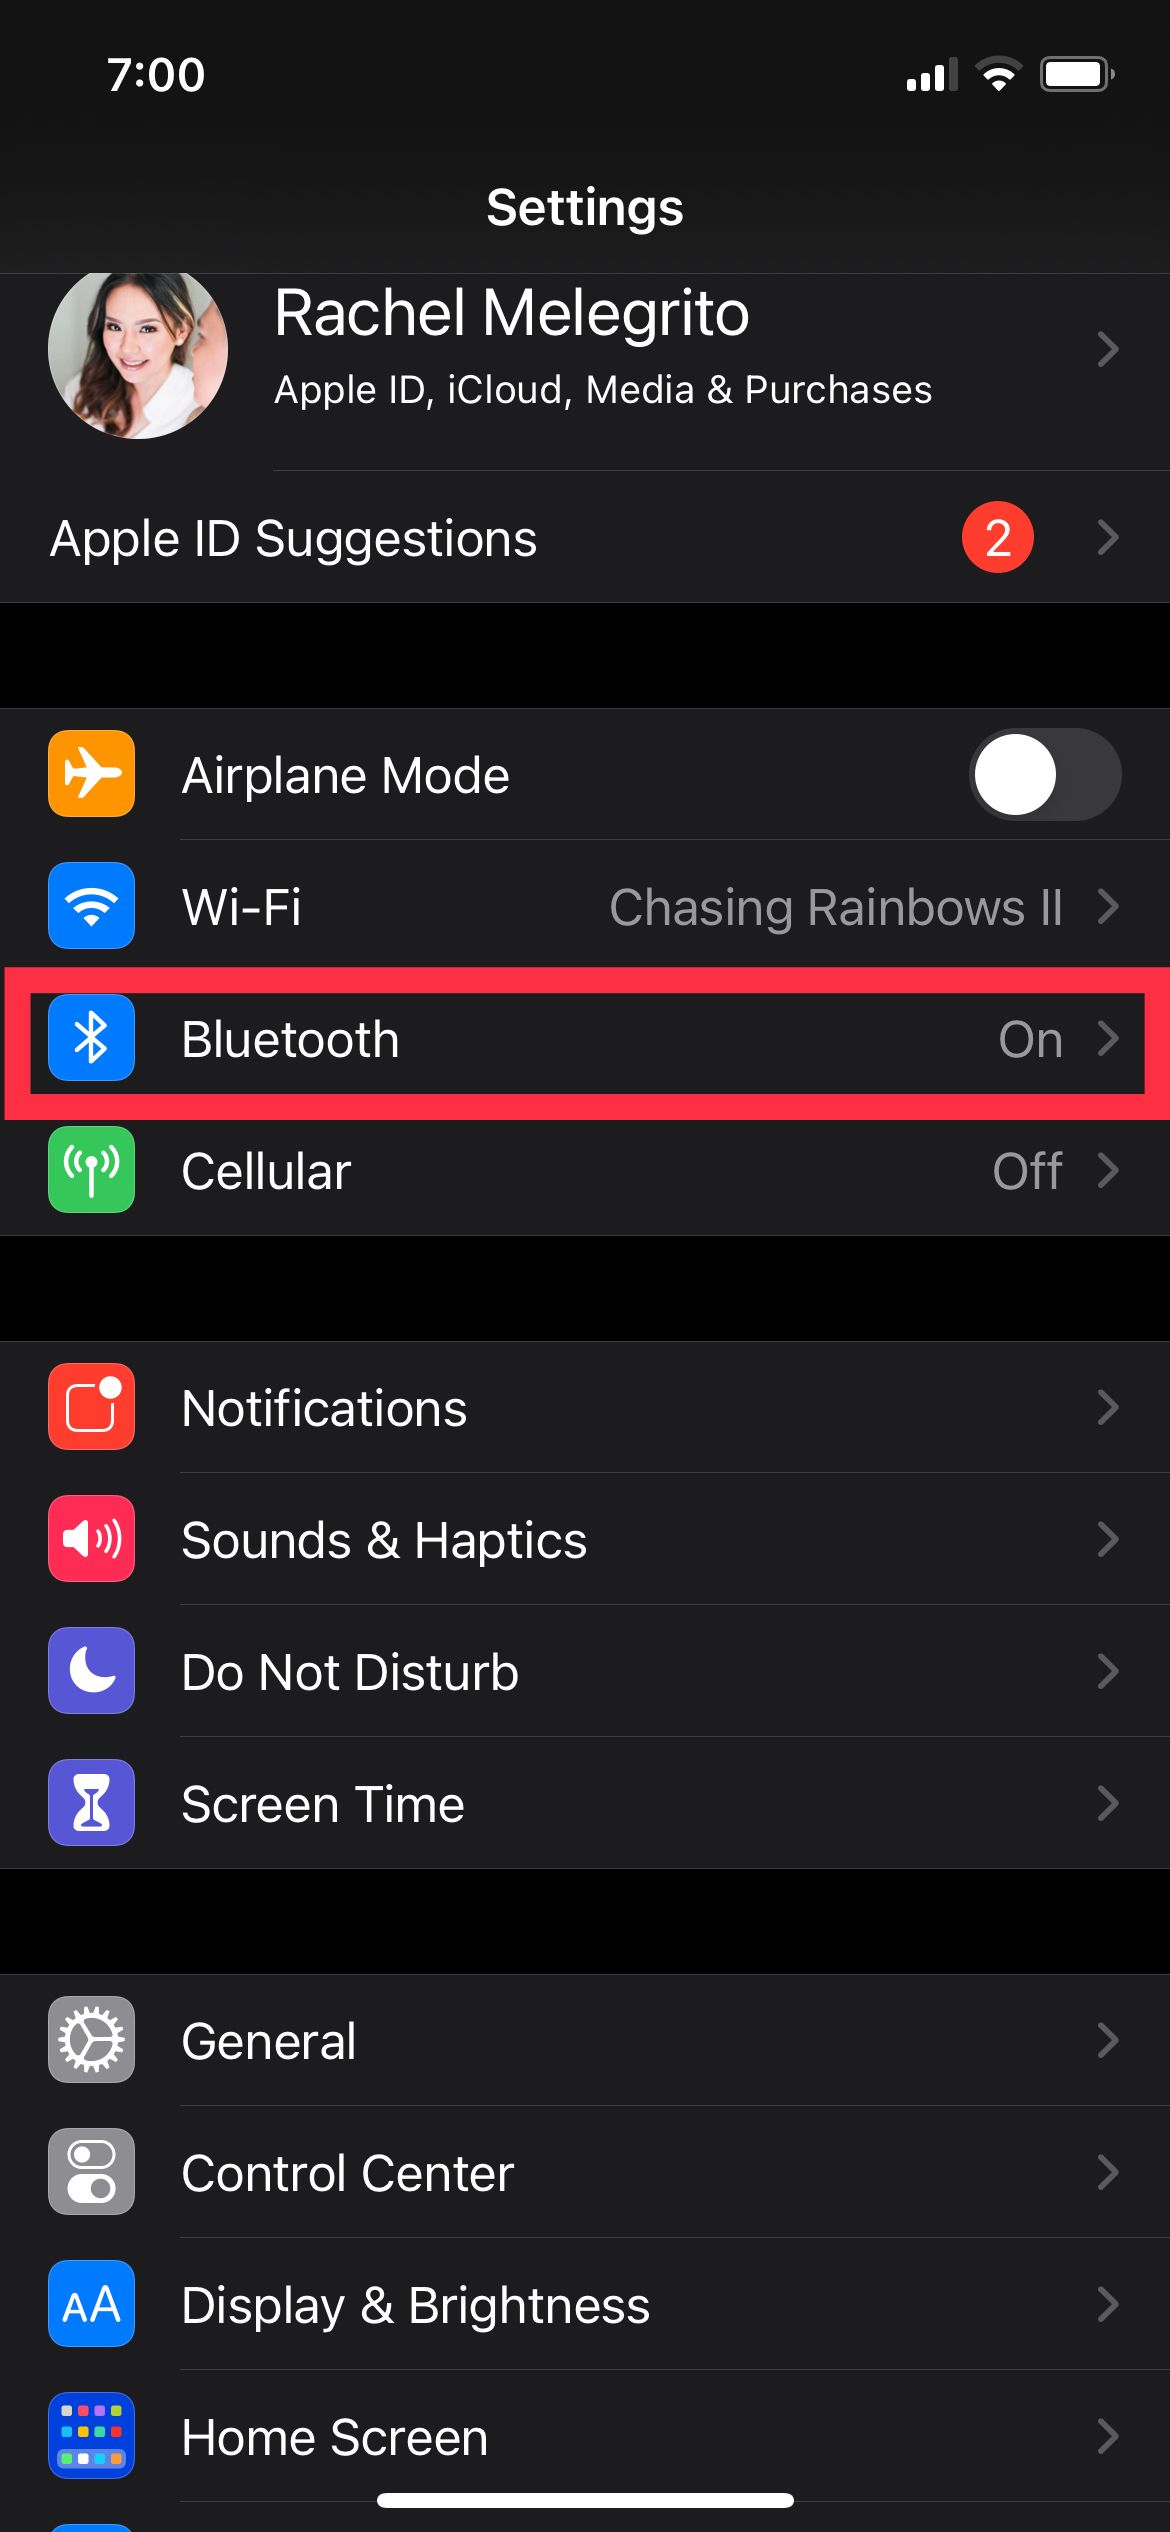 Bluetooth option on Settings